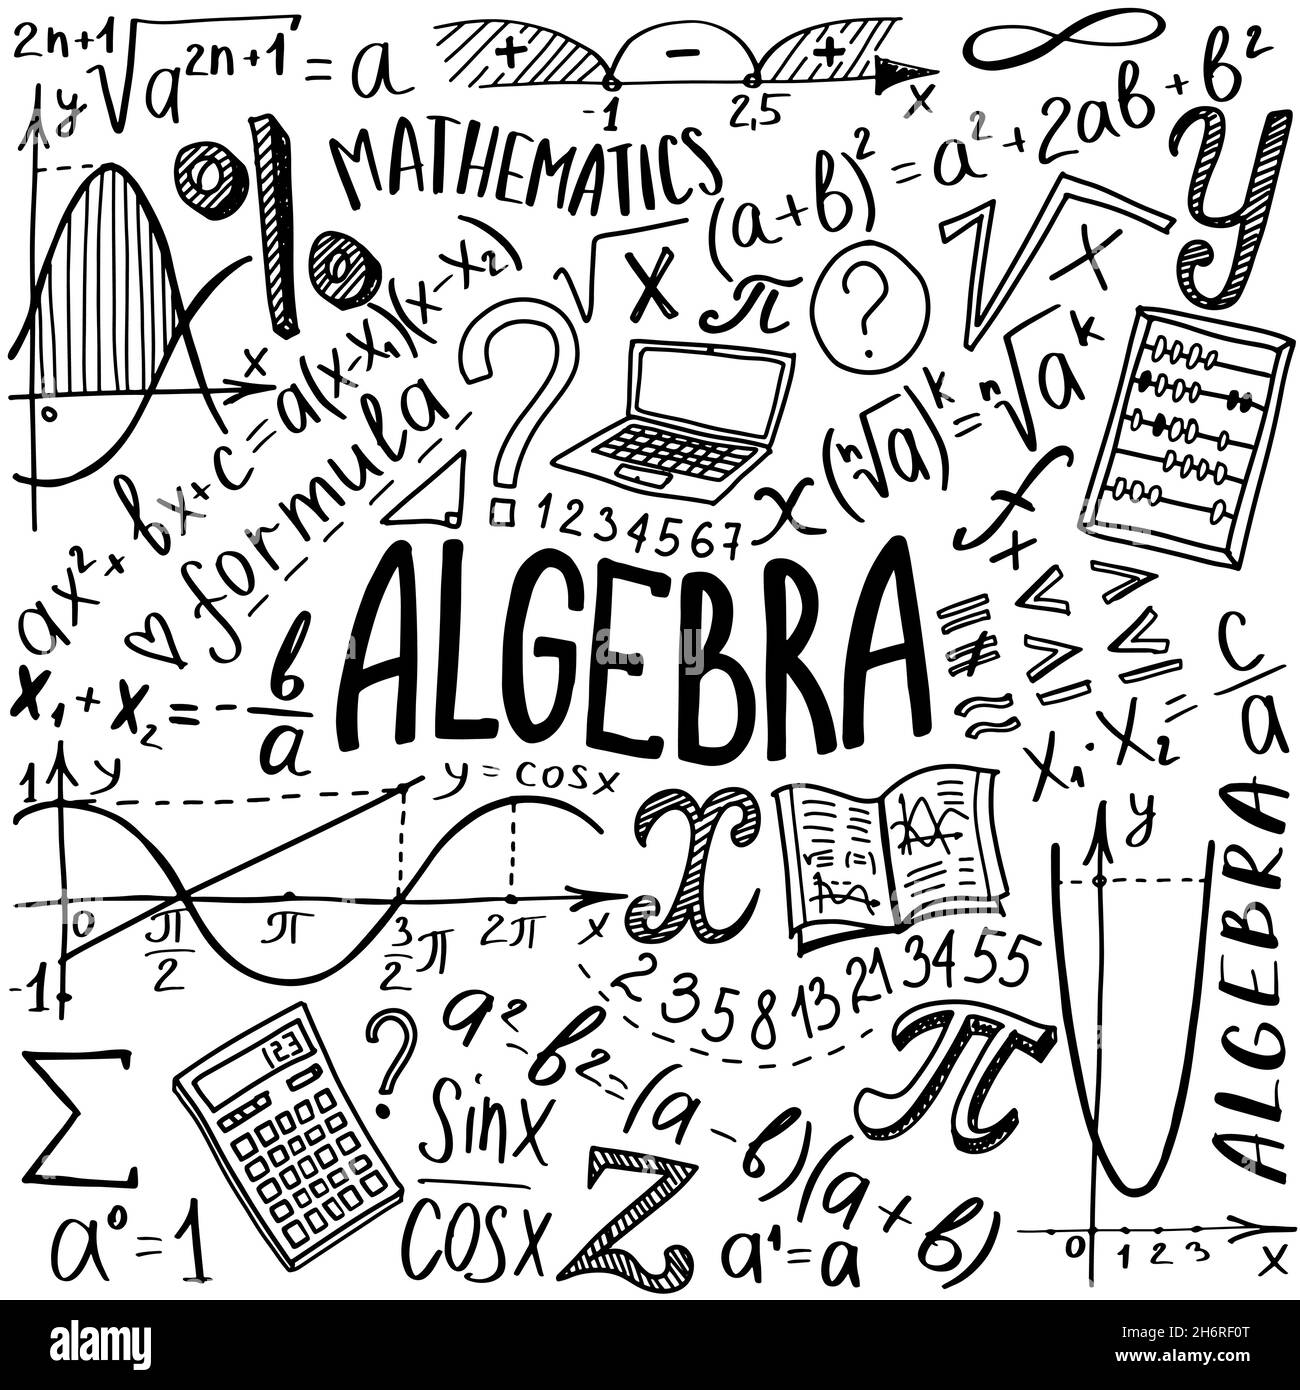 Álgebra 2 - Série 11 - Questionário